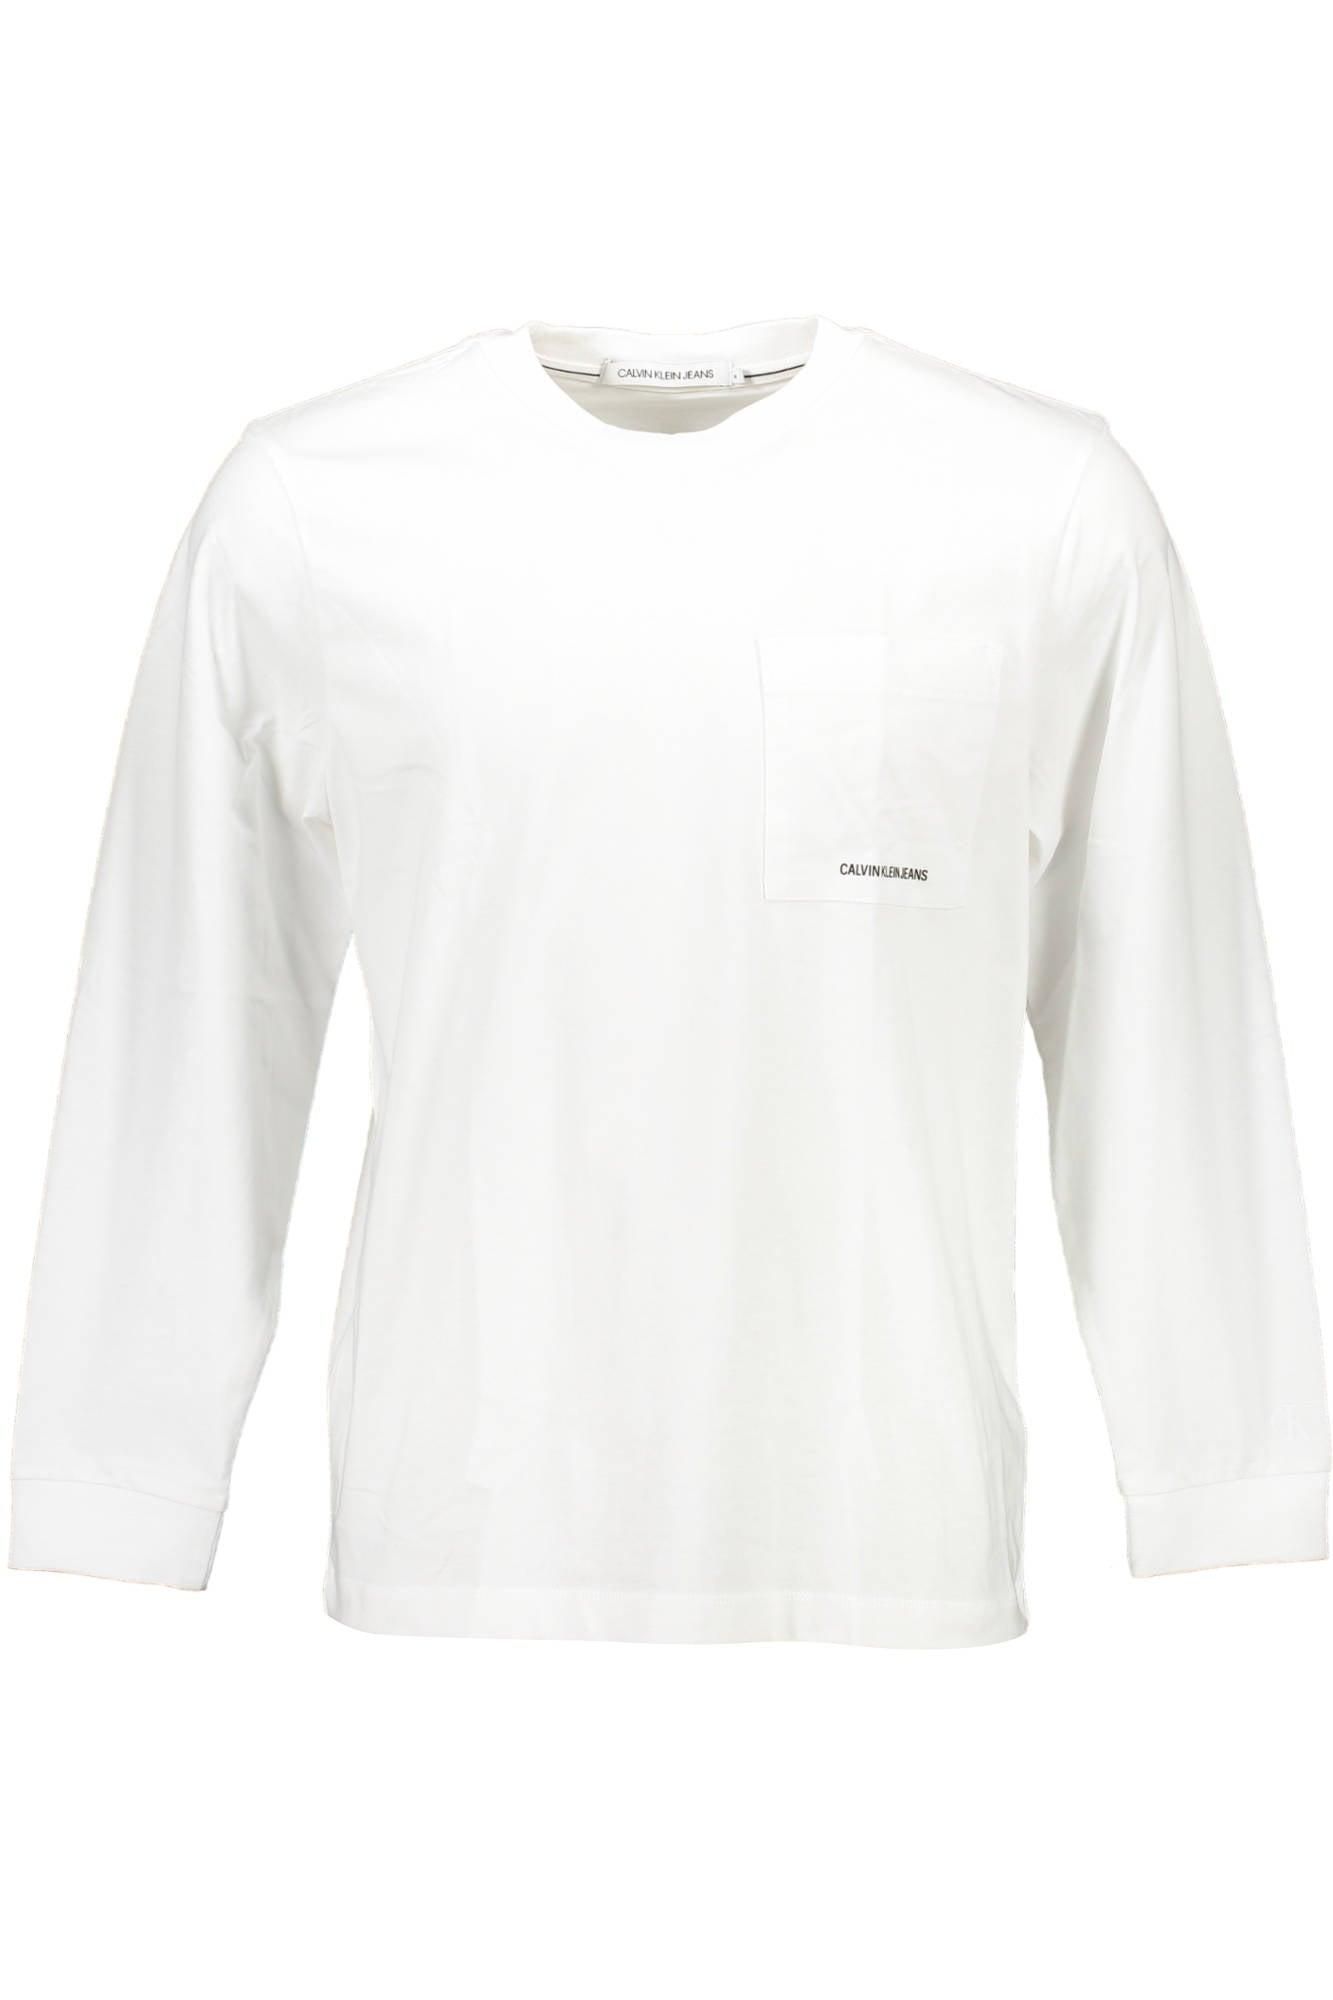 Calvin Klein Cotton T-shirt in White for Men | Lyst